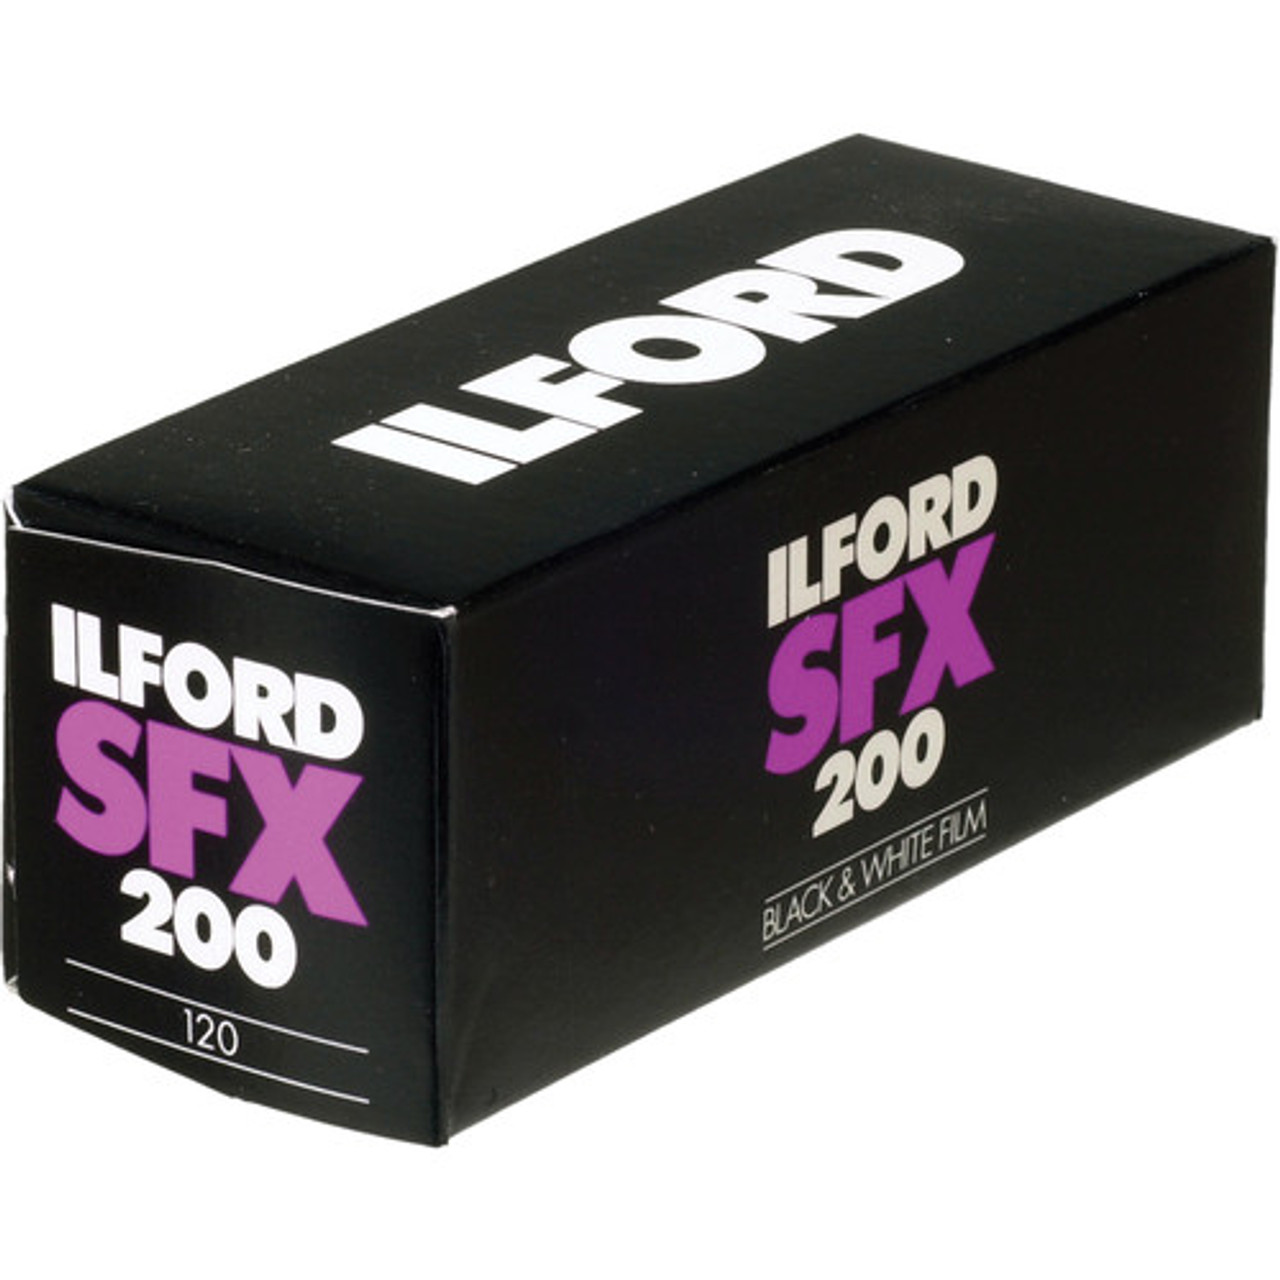 Ilford SFX 200 Black and White Negative Film - 120